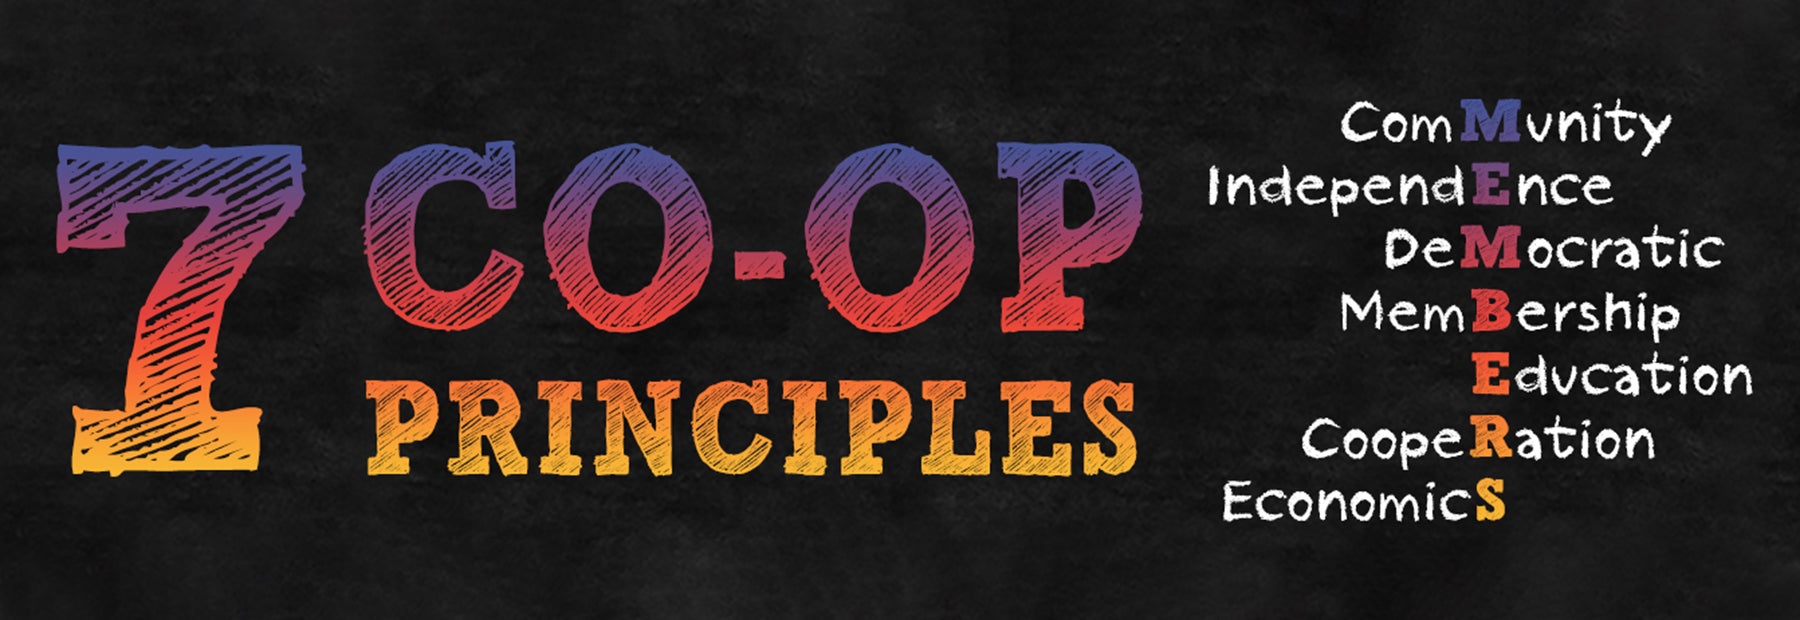 7 Co-op Principles